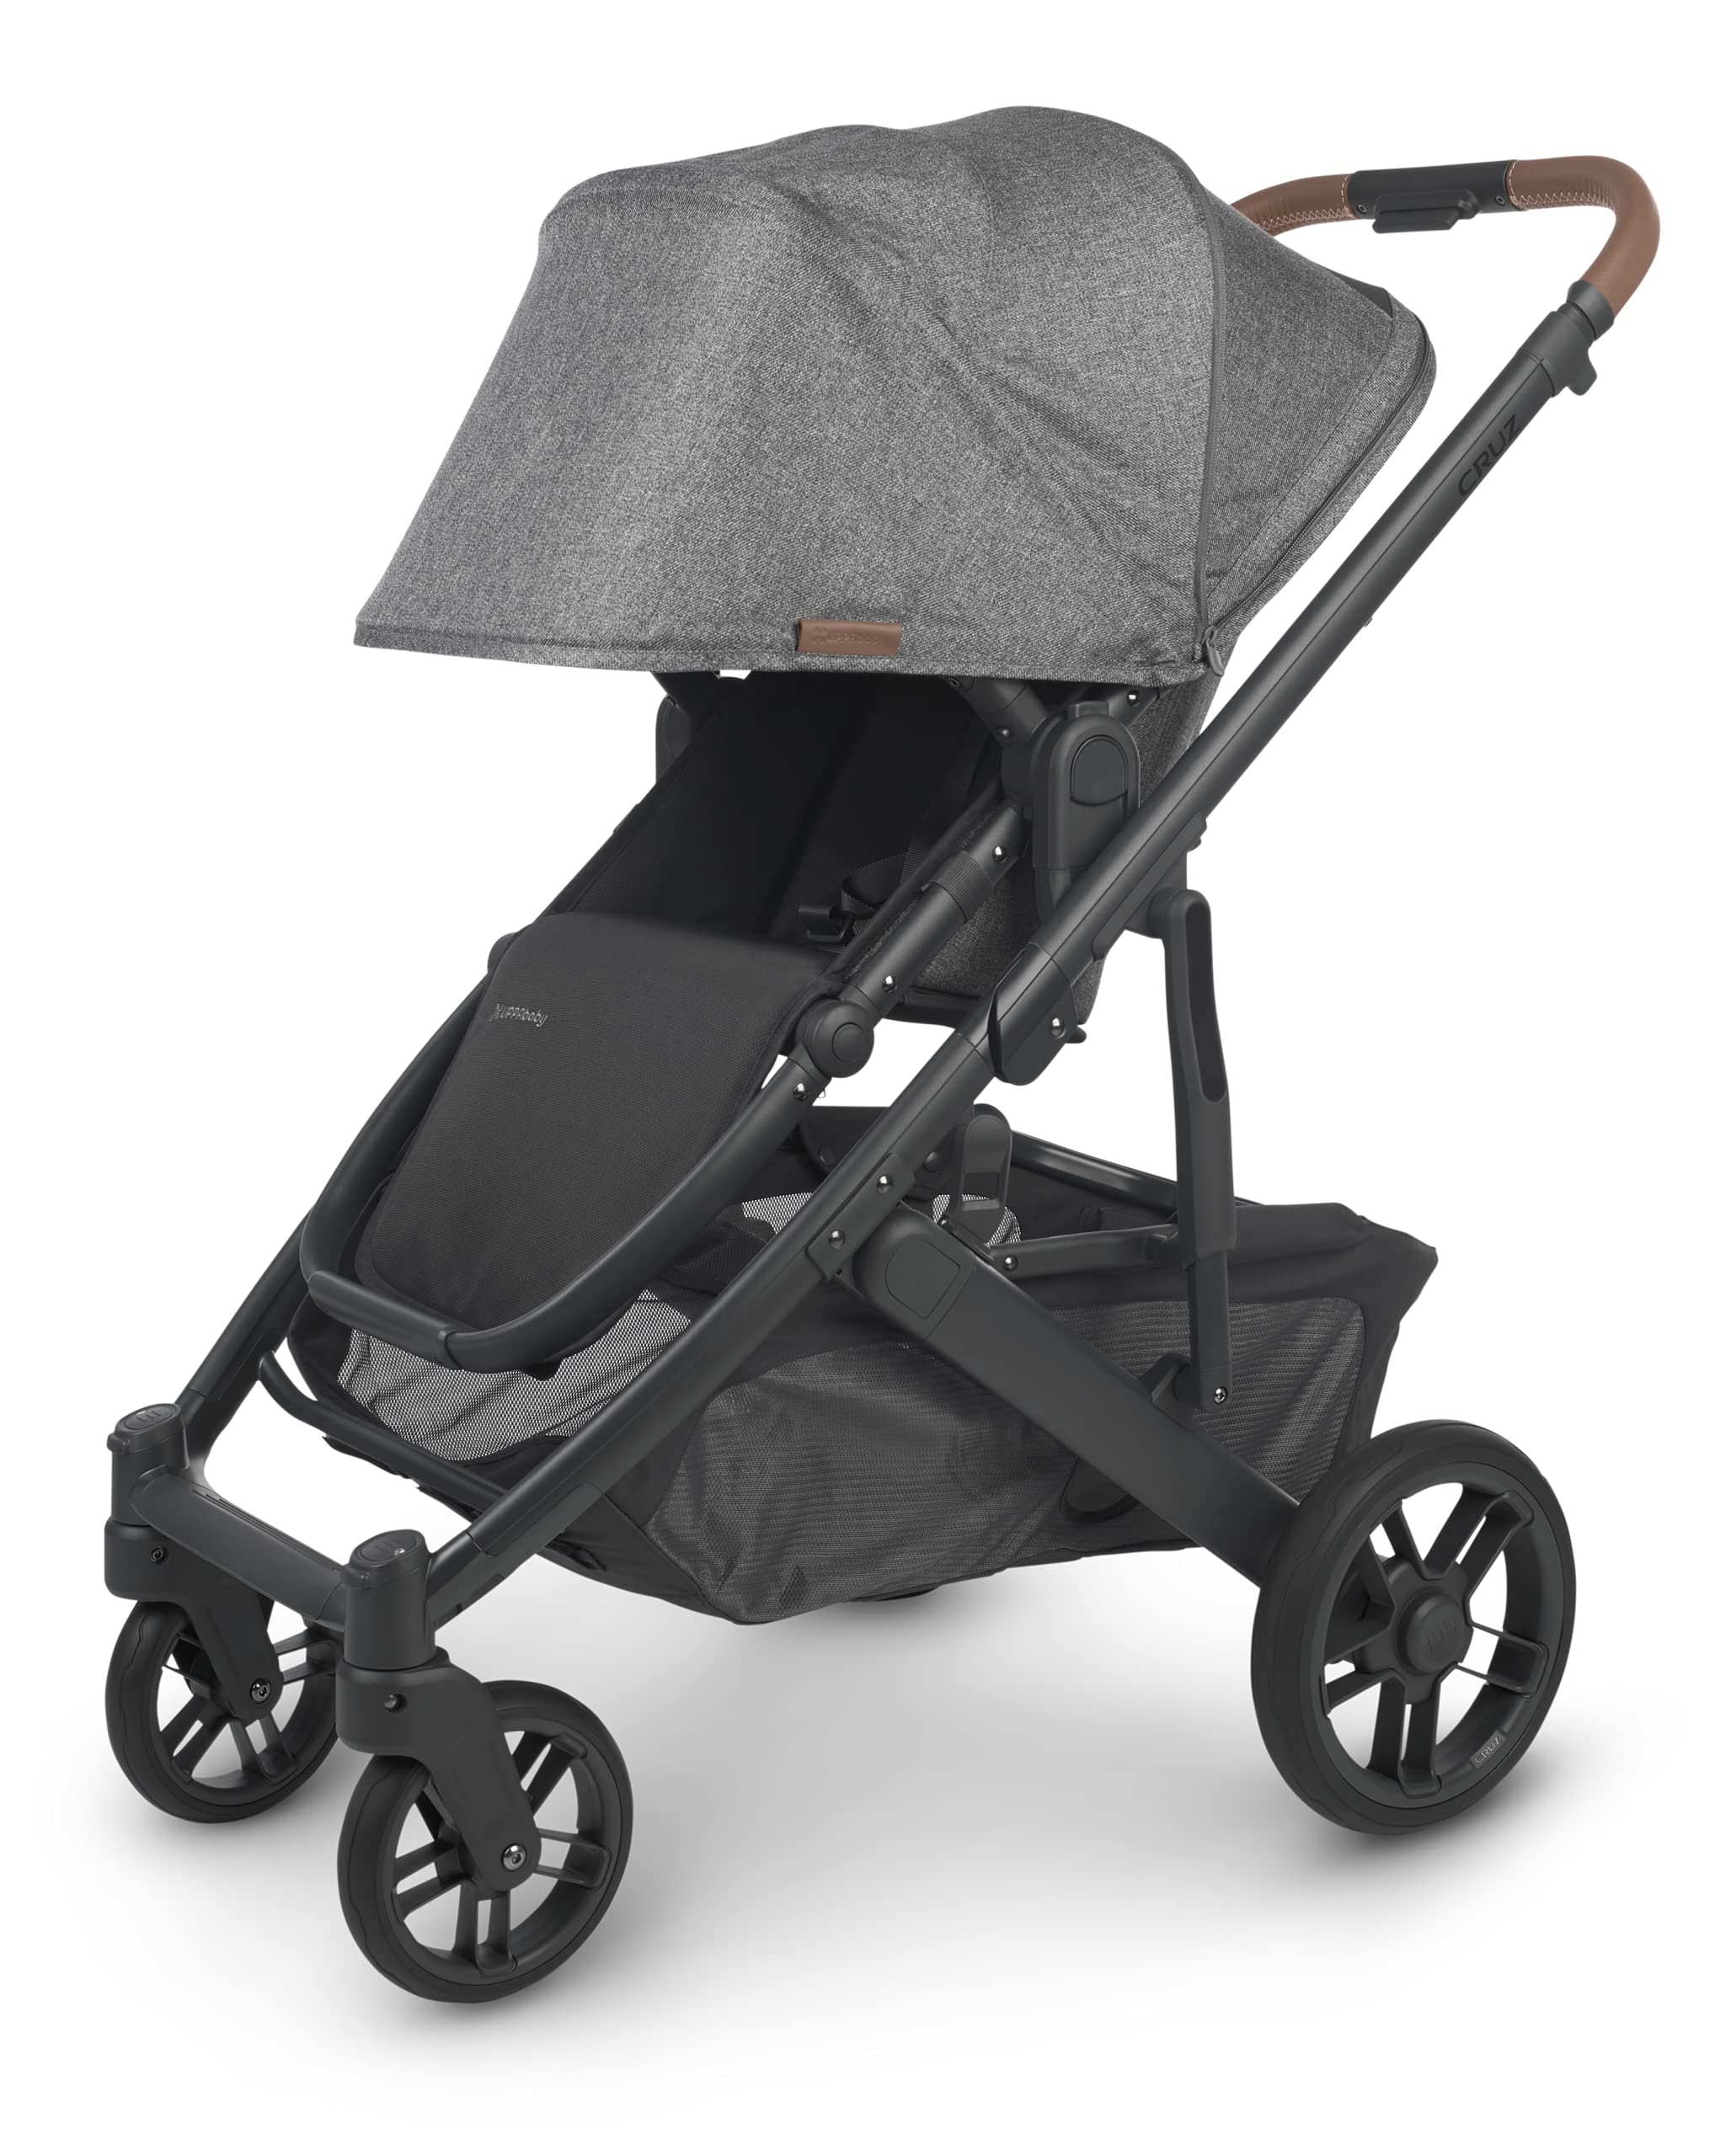 Cruz V2 Stroller - Greyson (Charcoal/Carbon/Saddle Leather)